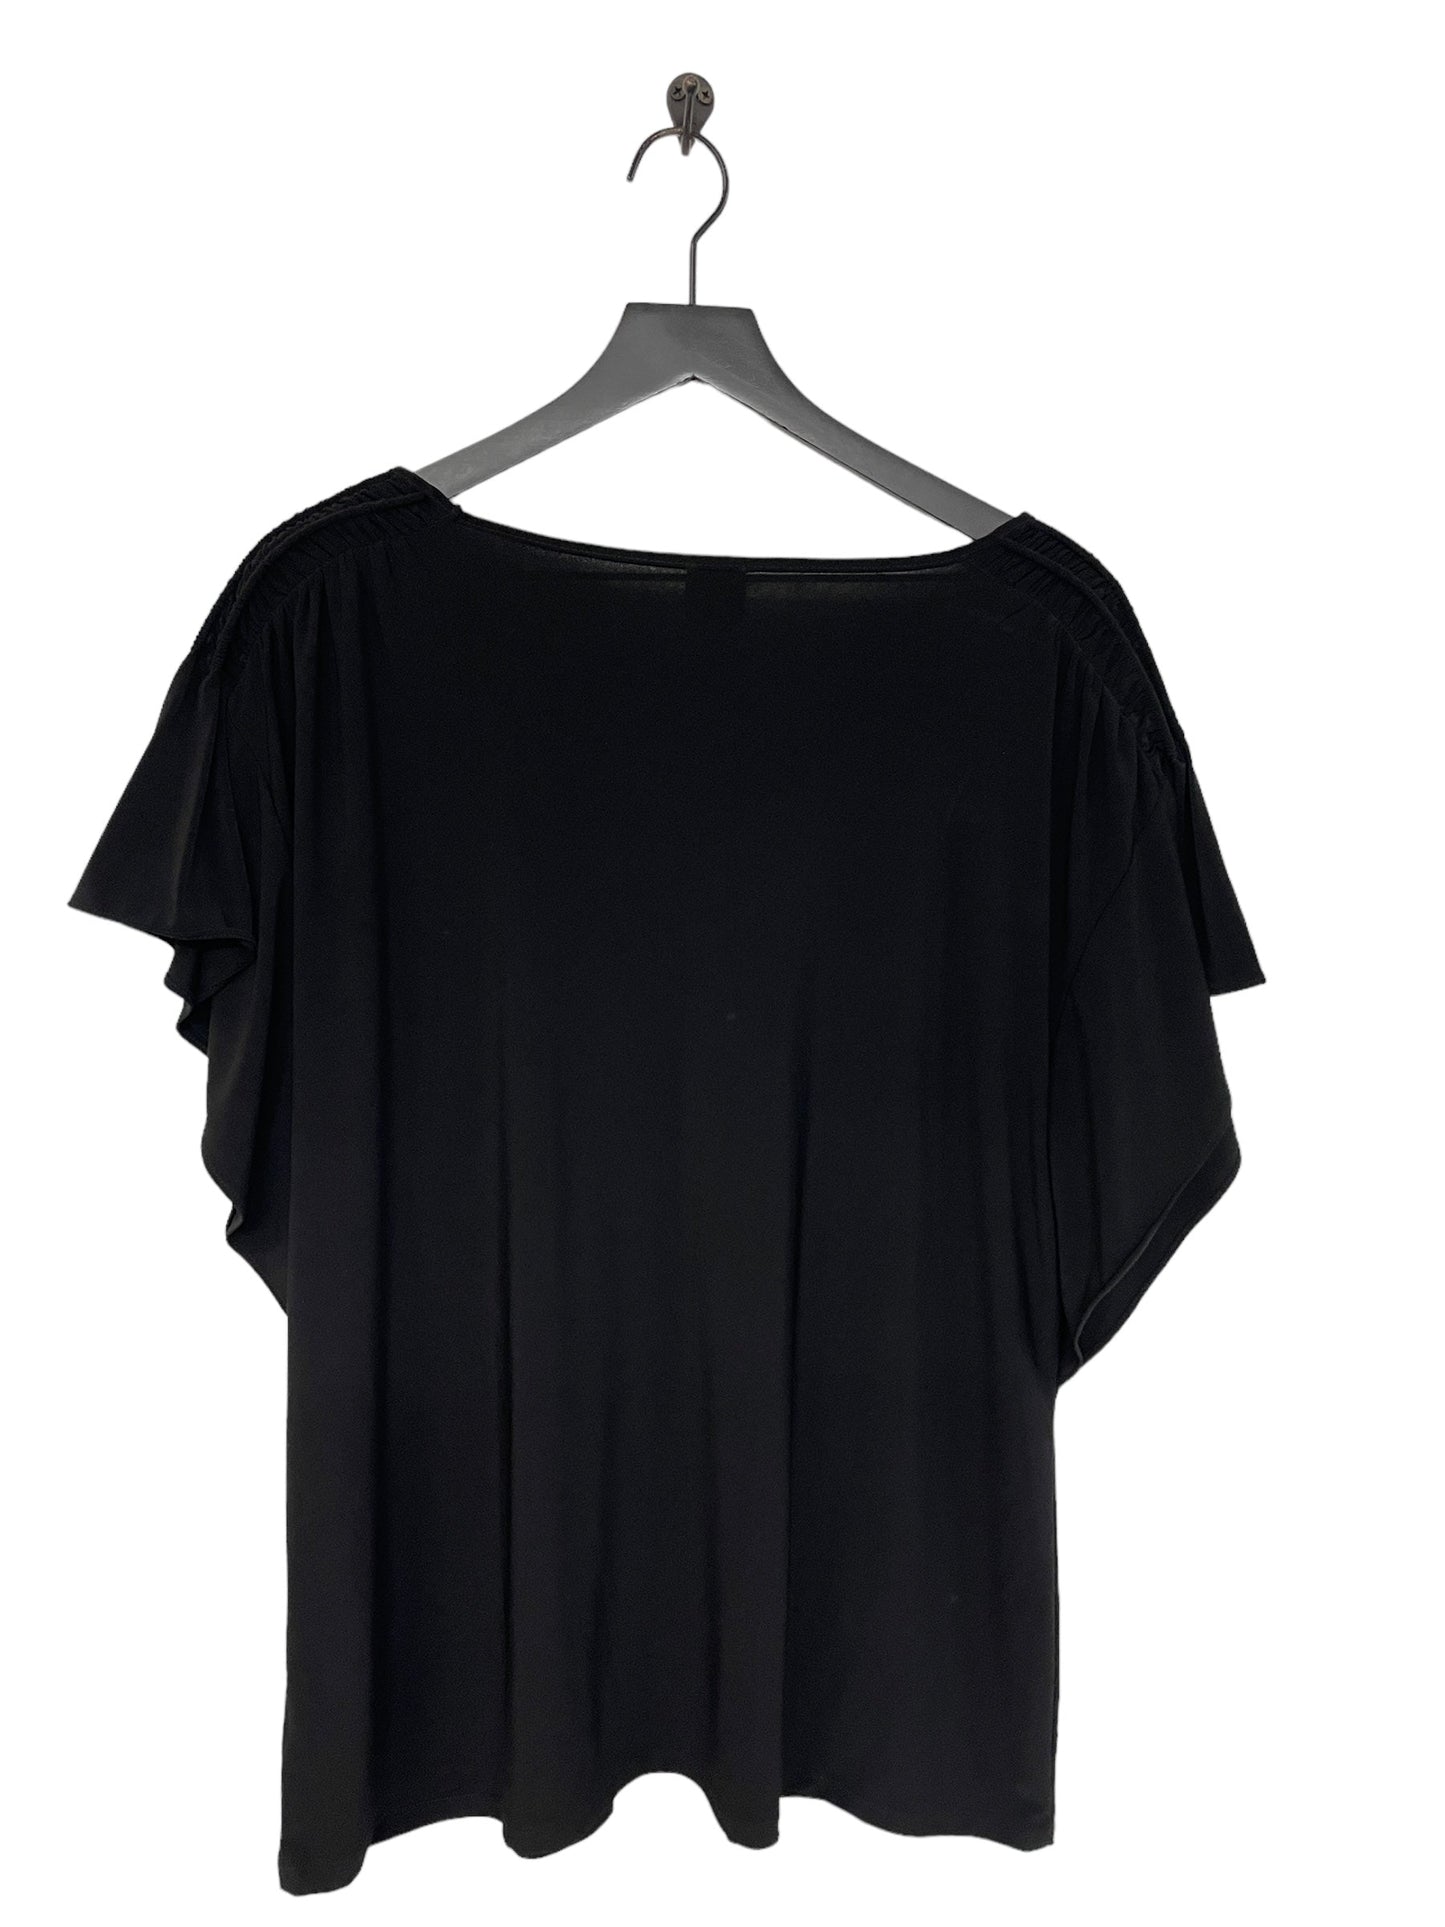 Black Top Short Sleeve Anne Klein, Size 2x